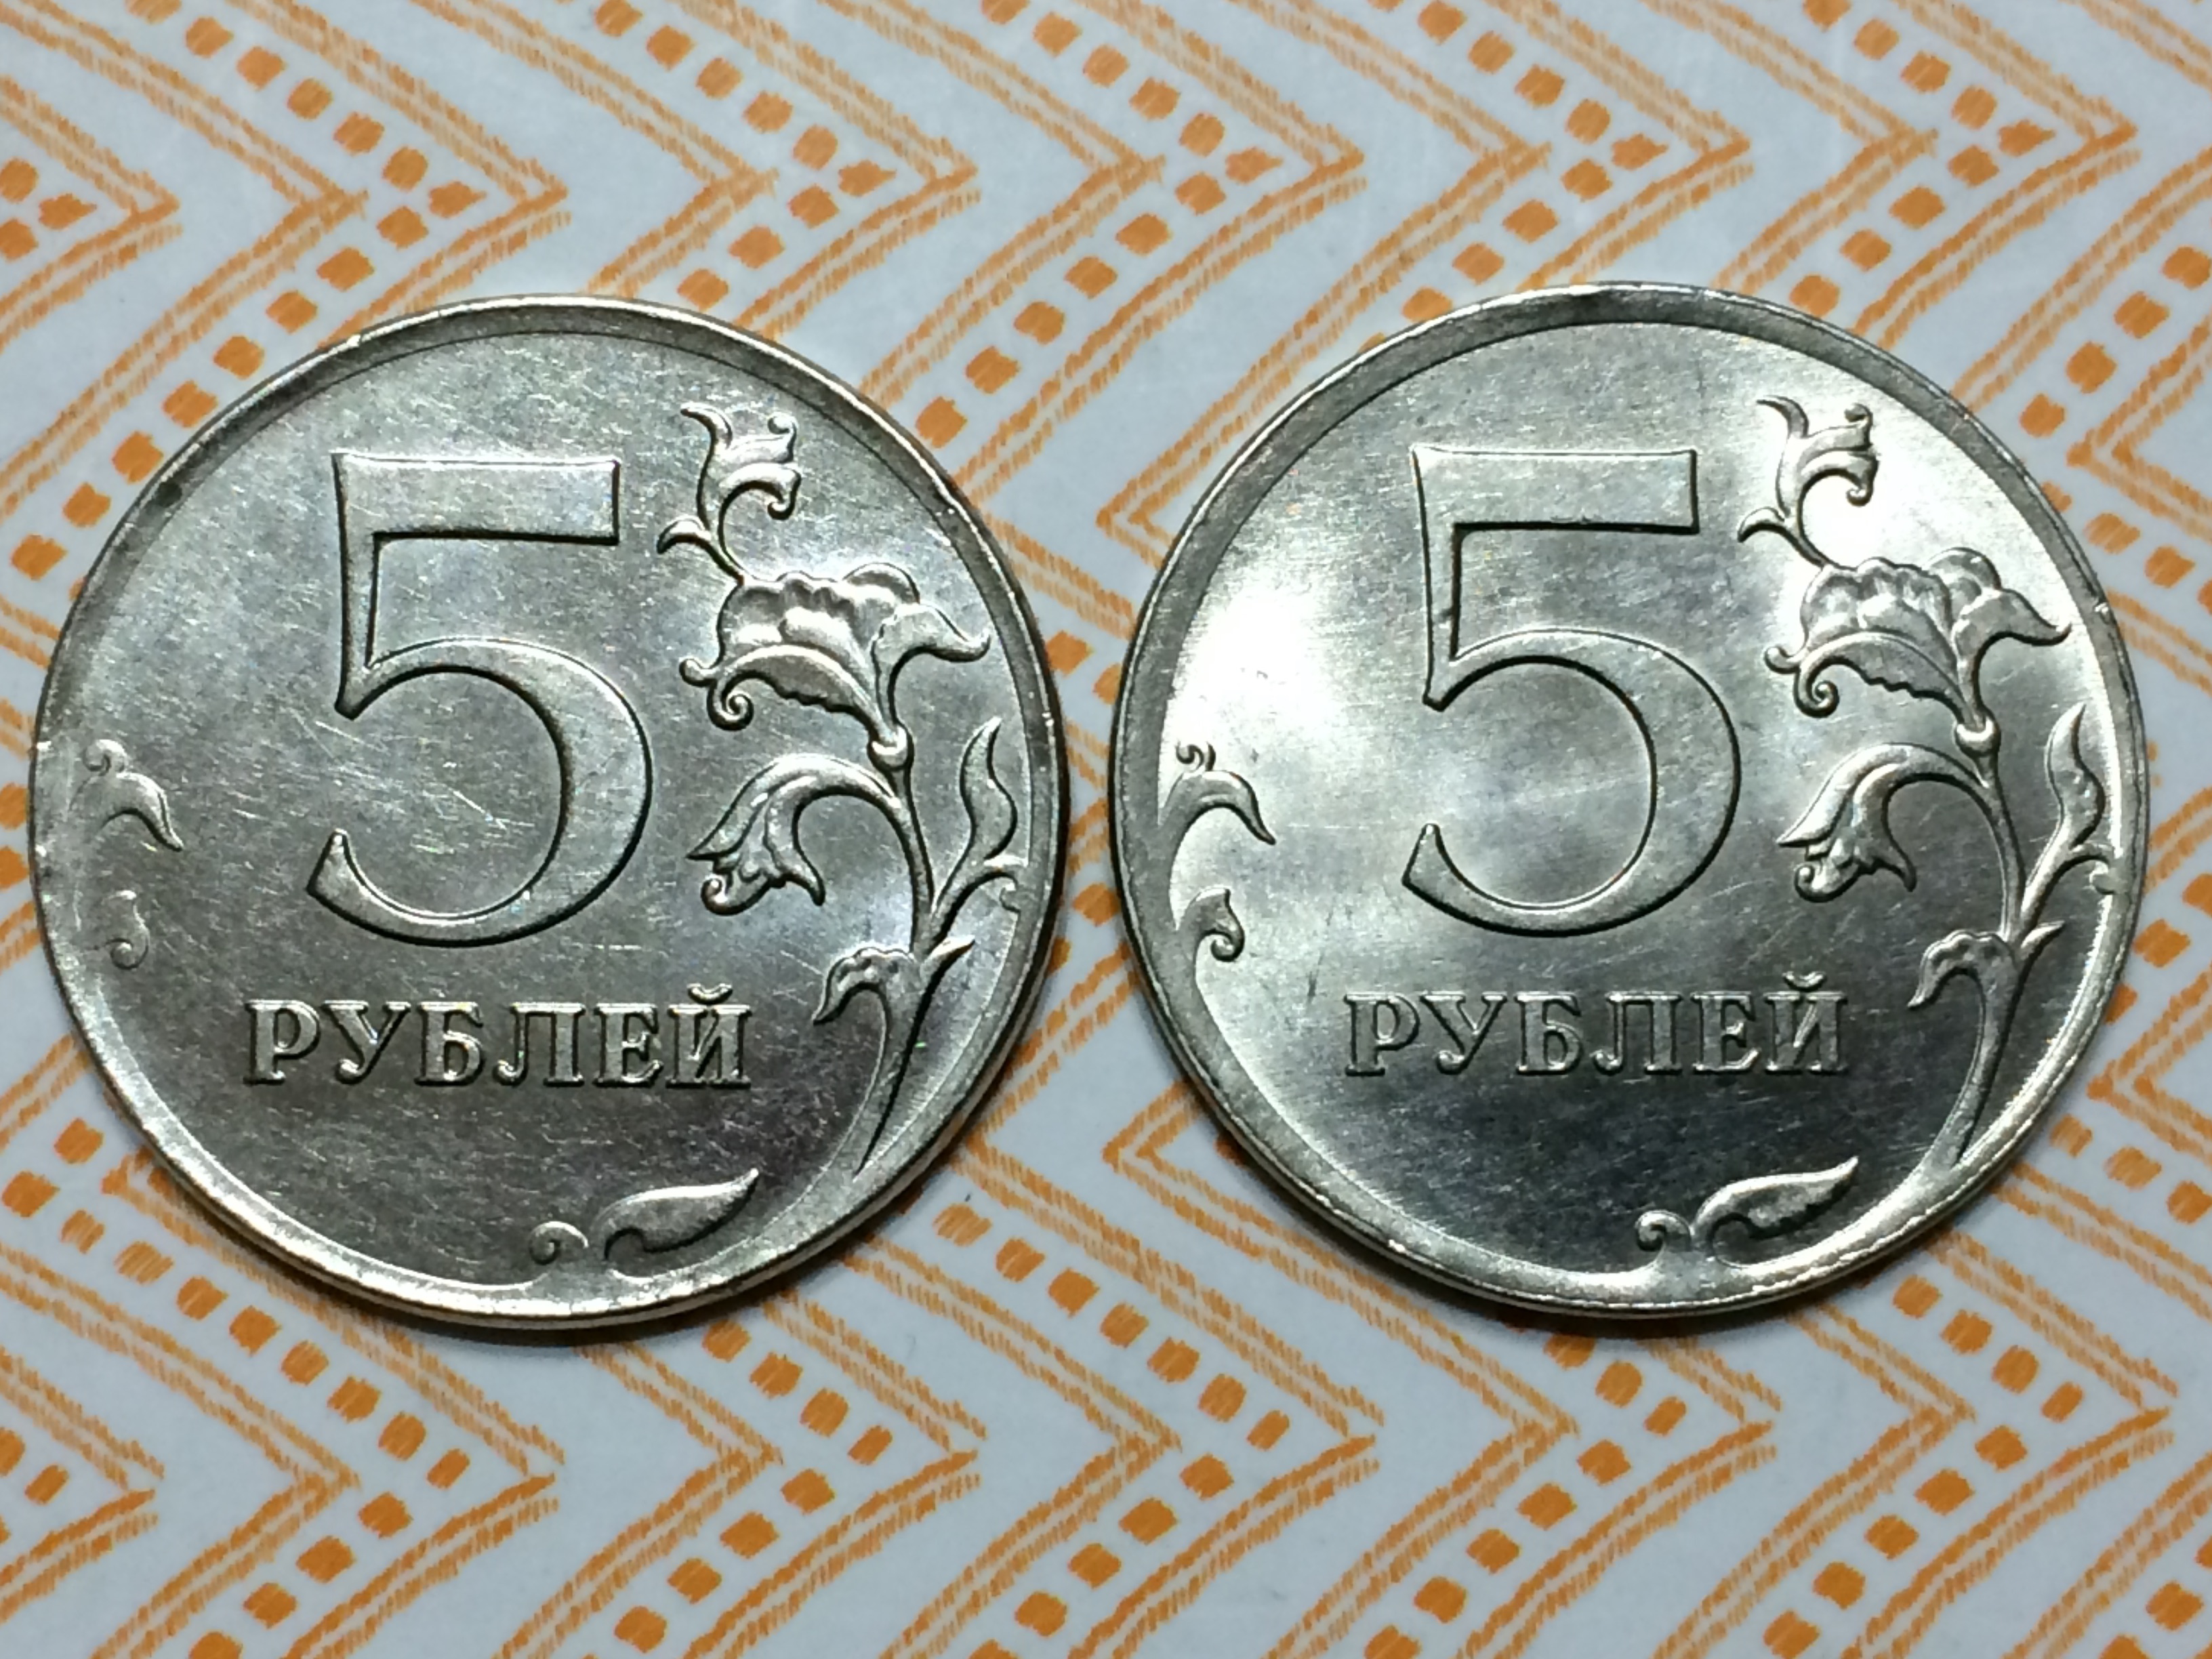 5 от 60 рублей. 5 Рублей. 5 Руб с гравировкой. 5 Рублей (1 января 1977) Таллин. 5 Рублей (1 января 1977) Минск.